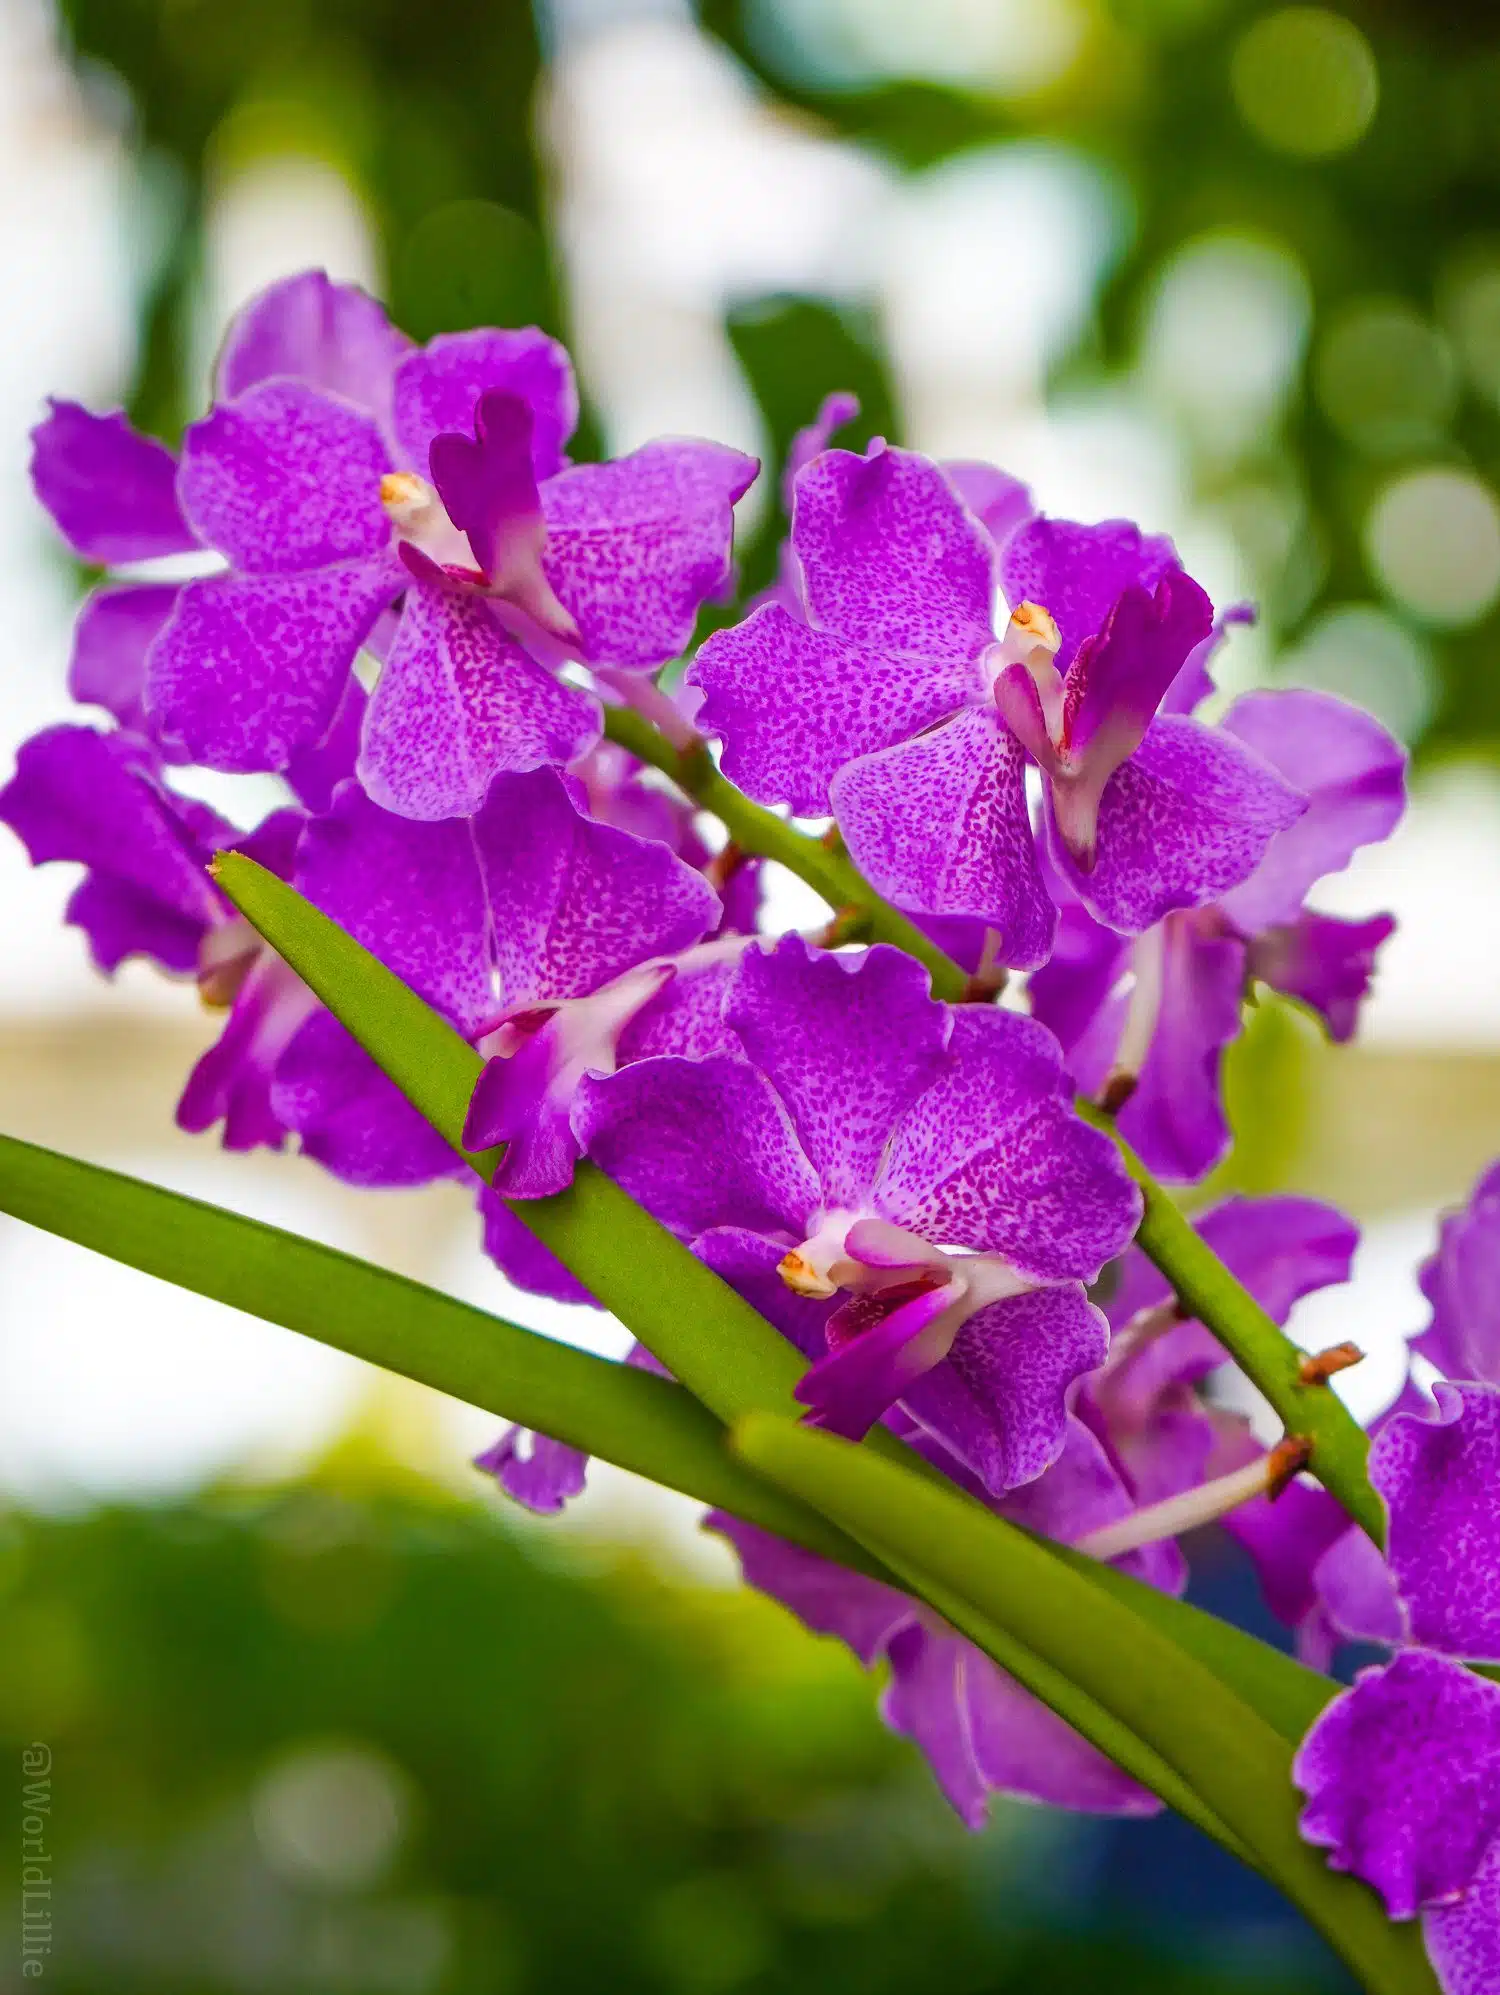 Graceful violet flowers.